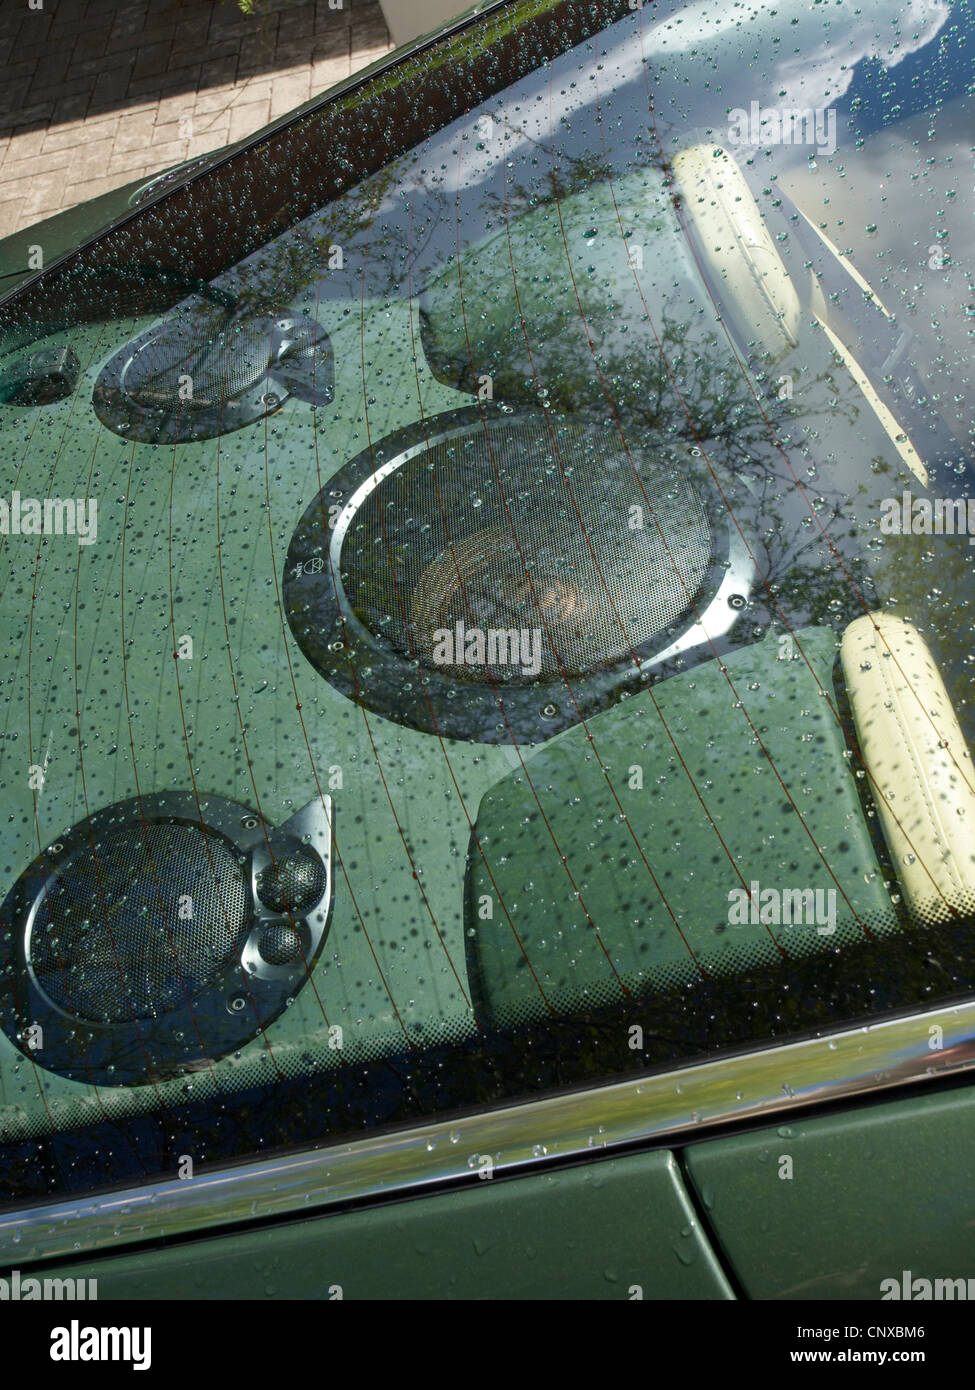 Altoparlanti di grandi dimensioni dietro il finestrino posteriore di verde Aston Martin sportscar Foto Stock